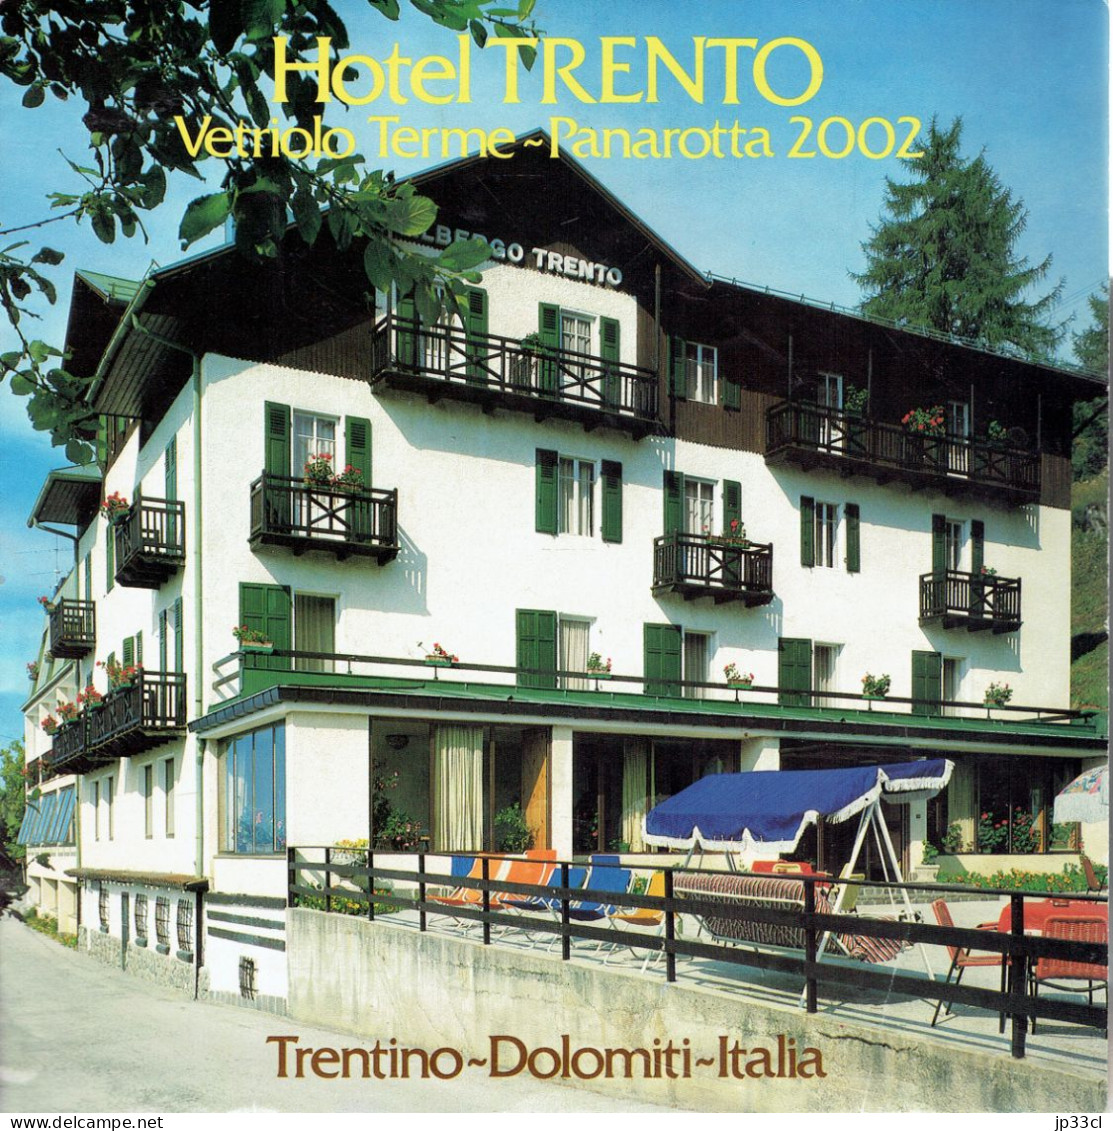 Dépliant Sur L'Hôtel Trento Vetriolo Terme - Panarota 2002, Dolomiti (en Français, Italien, Allemand Et Anglais) - Reiseprospekte